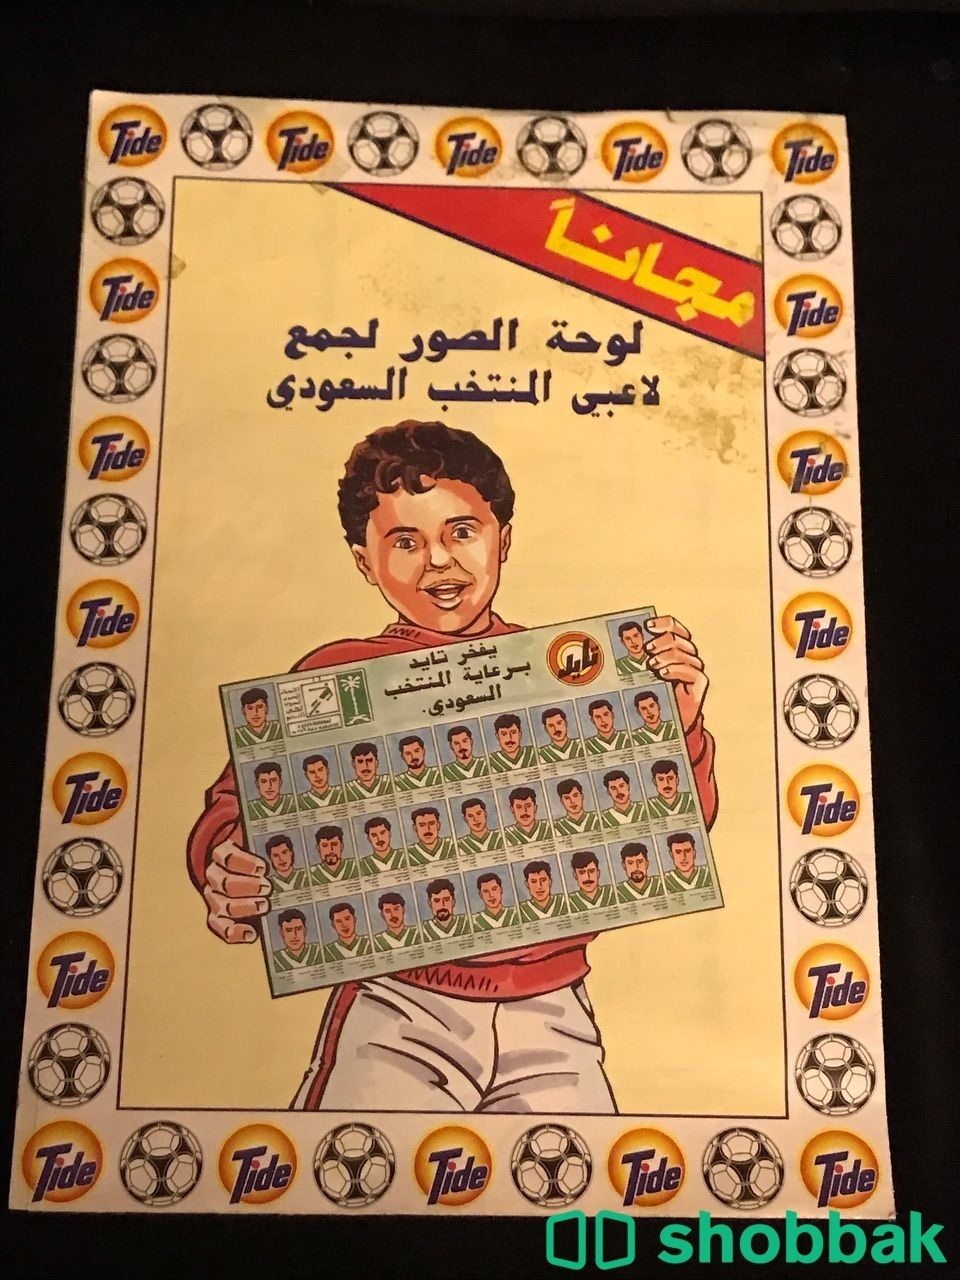 لوحة دعم المنتخب السعودي في كأس العالم عام 94 Shobbak Saudi Arabia